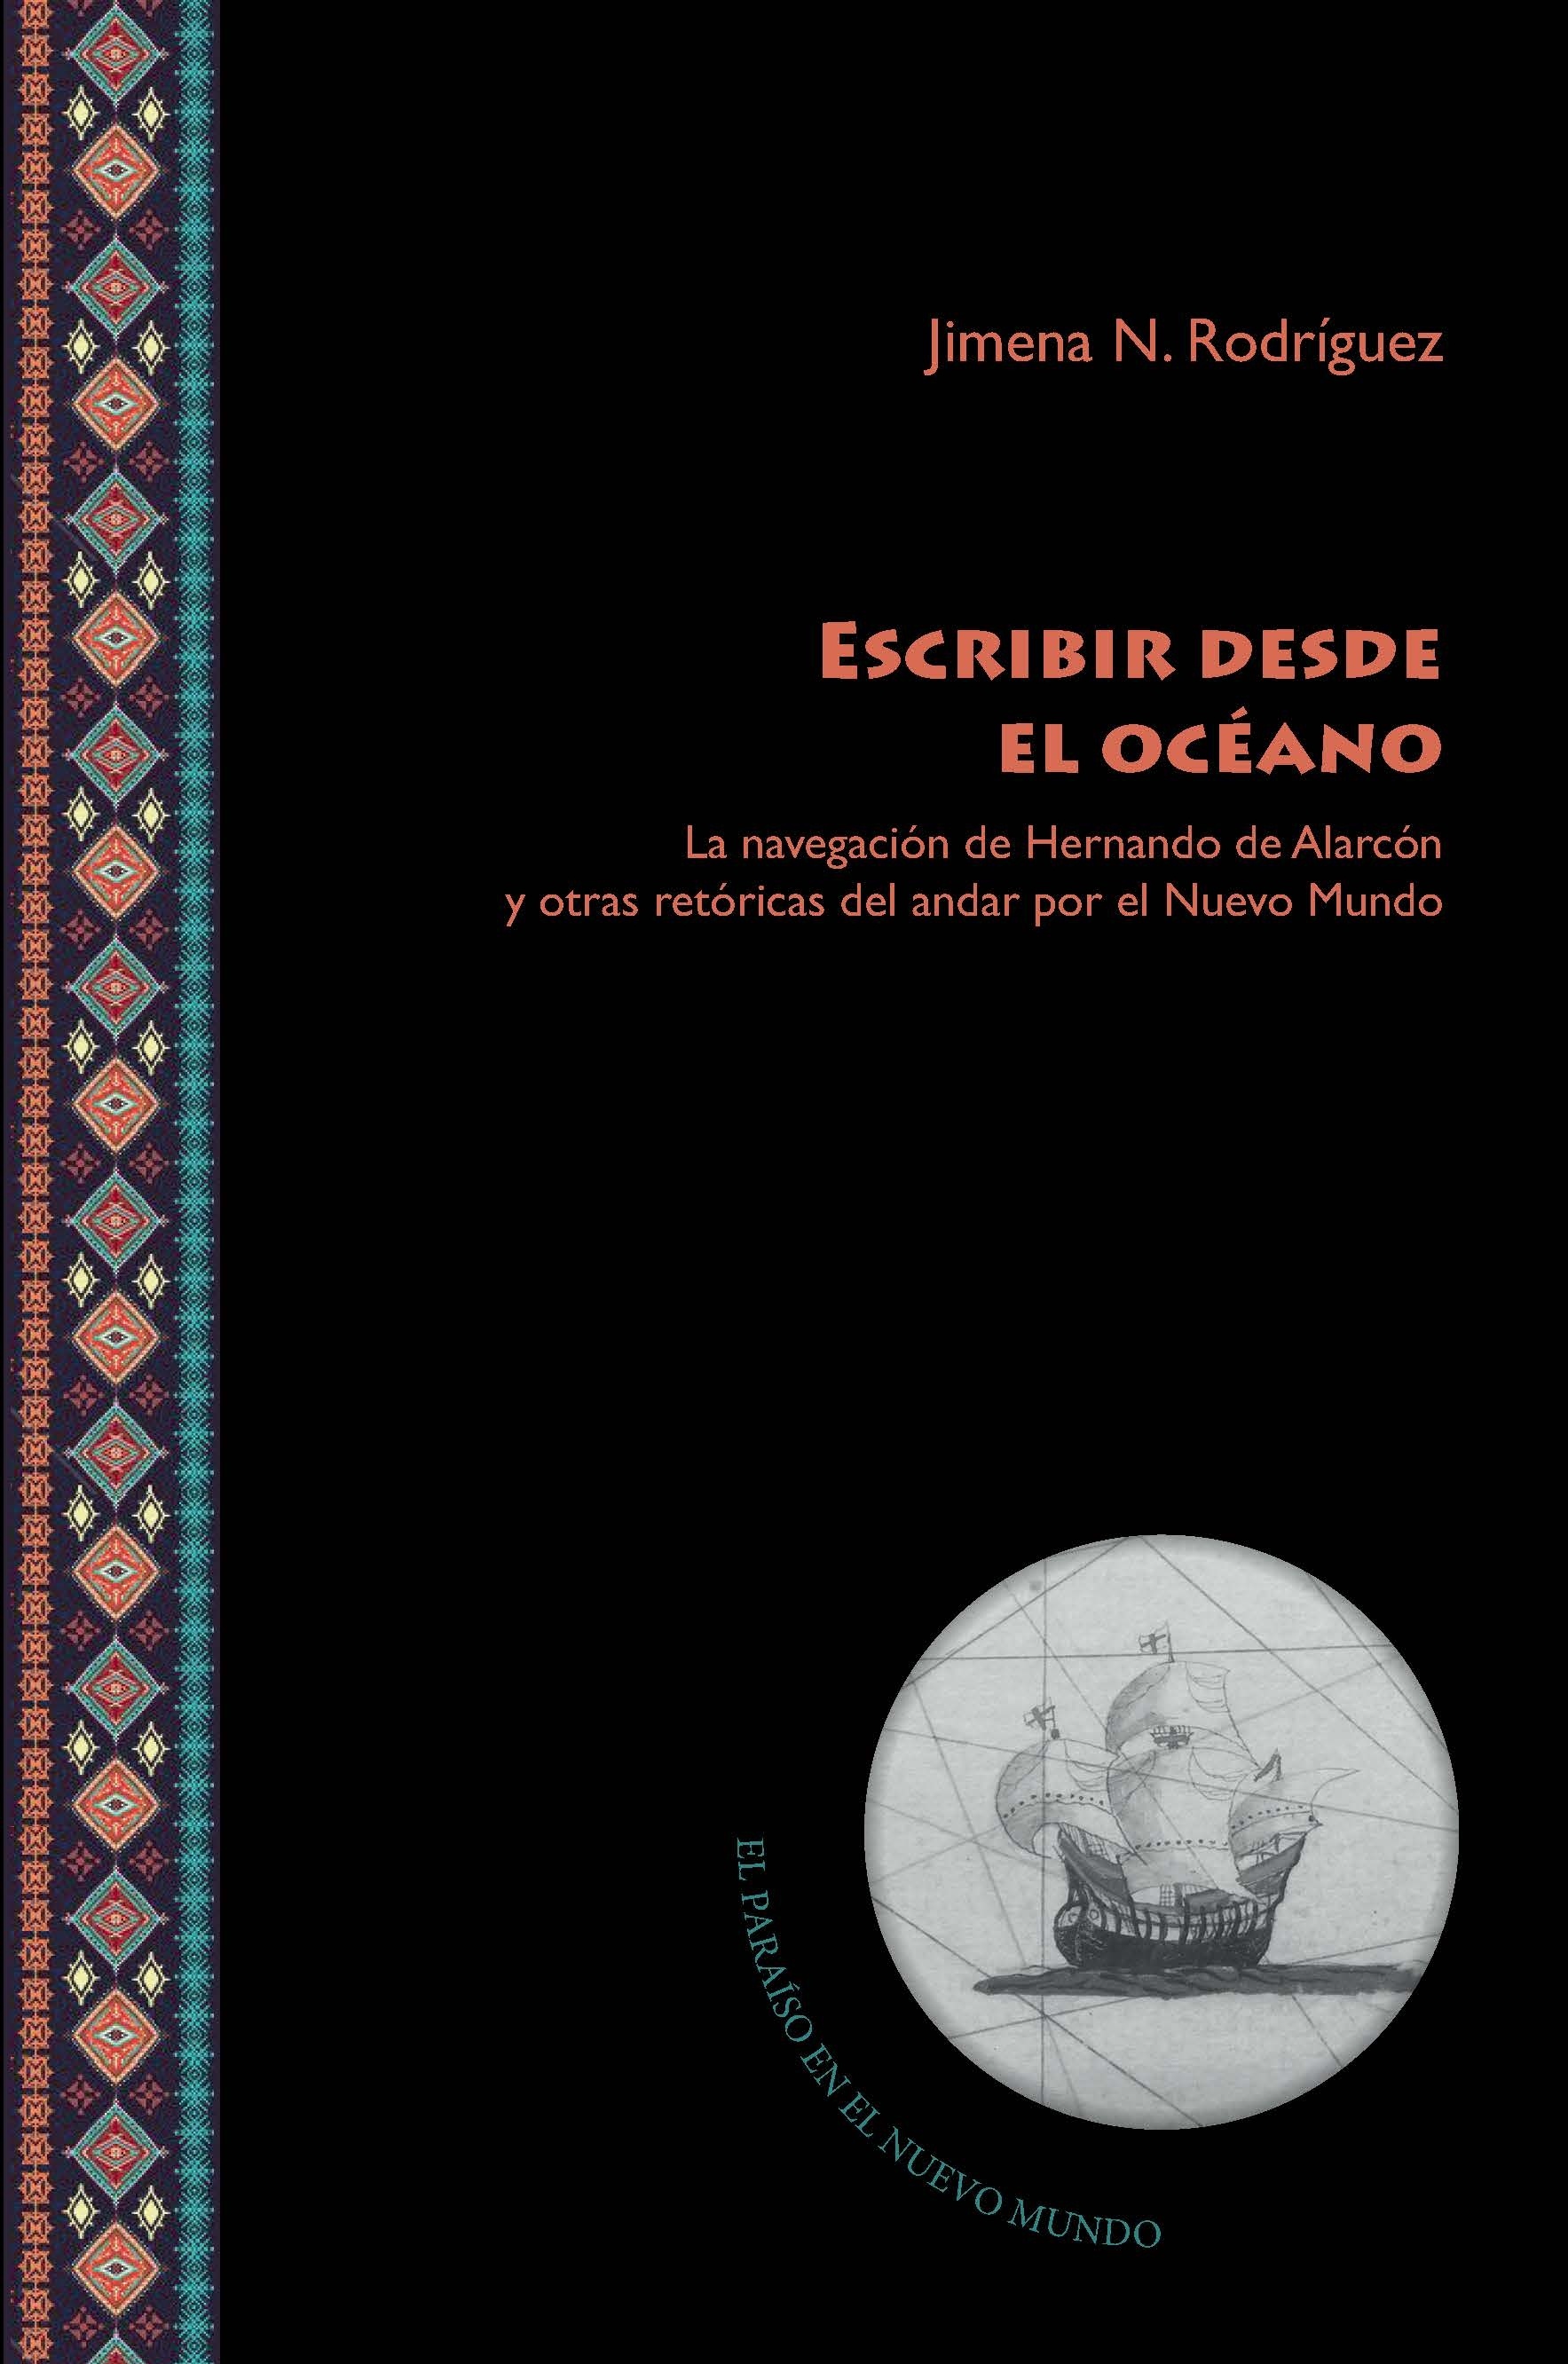 Escribir desde el océano "la navegación de Hernando de Alarcón y otras retóricas del andar"